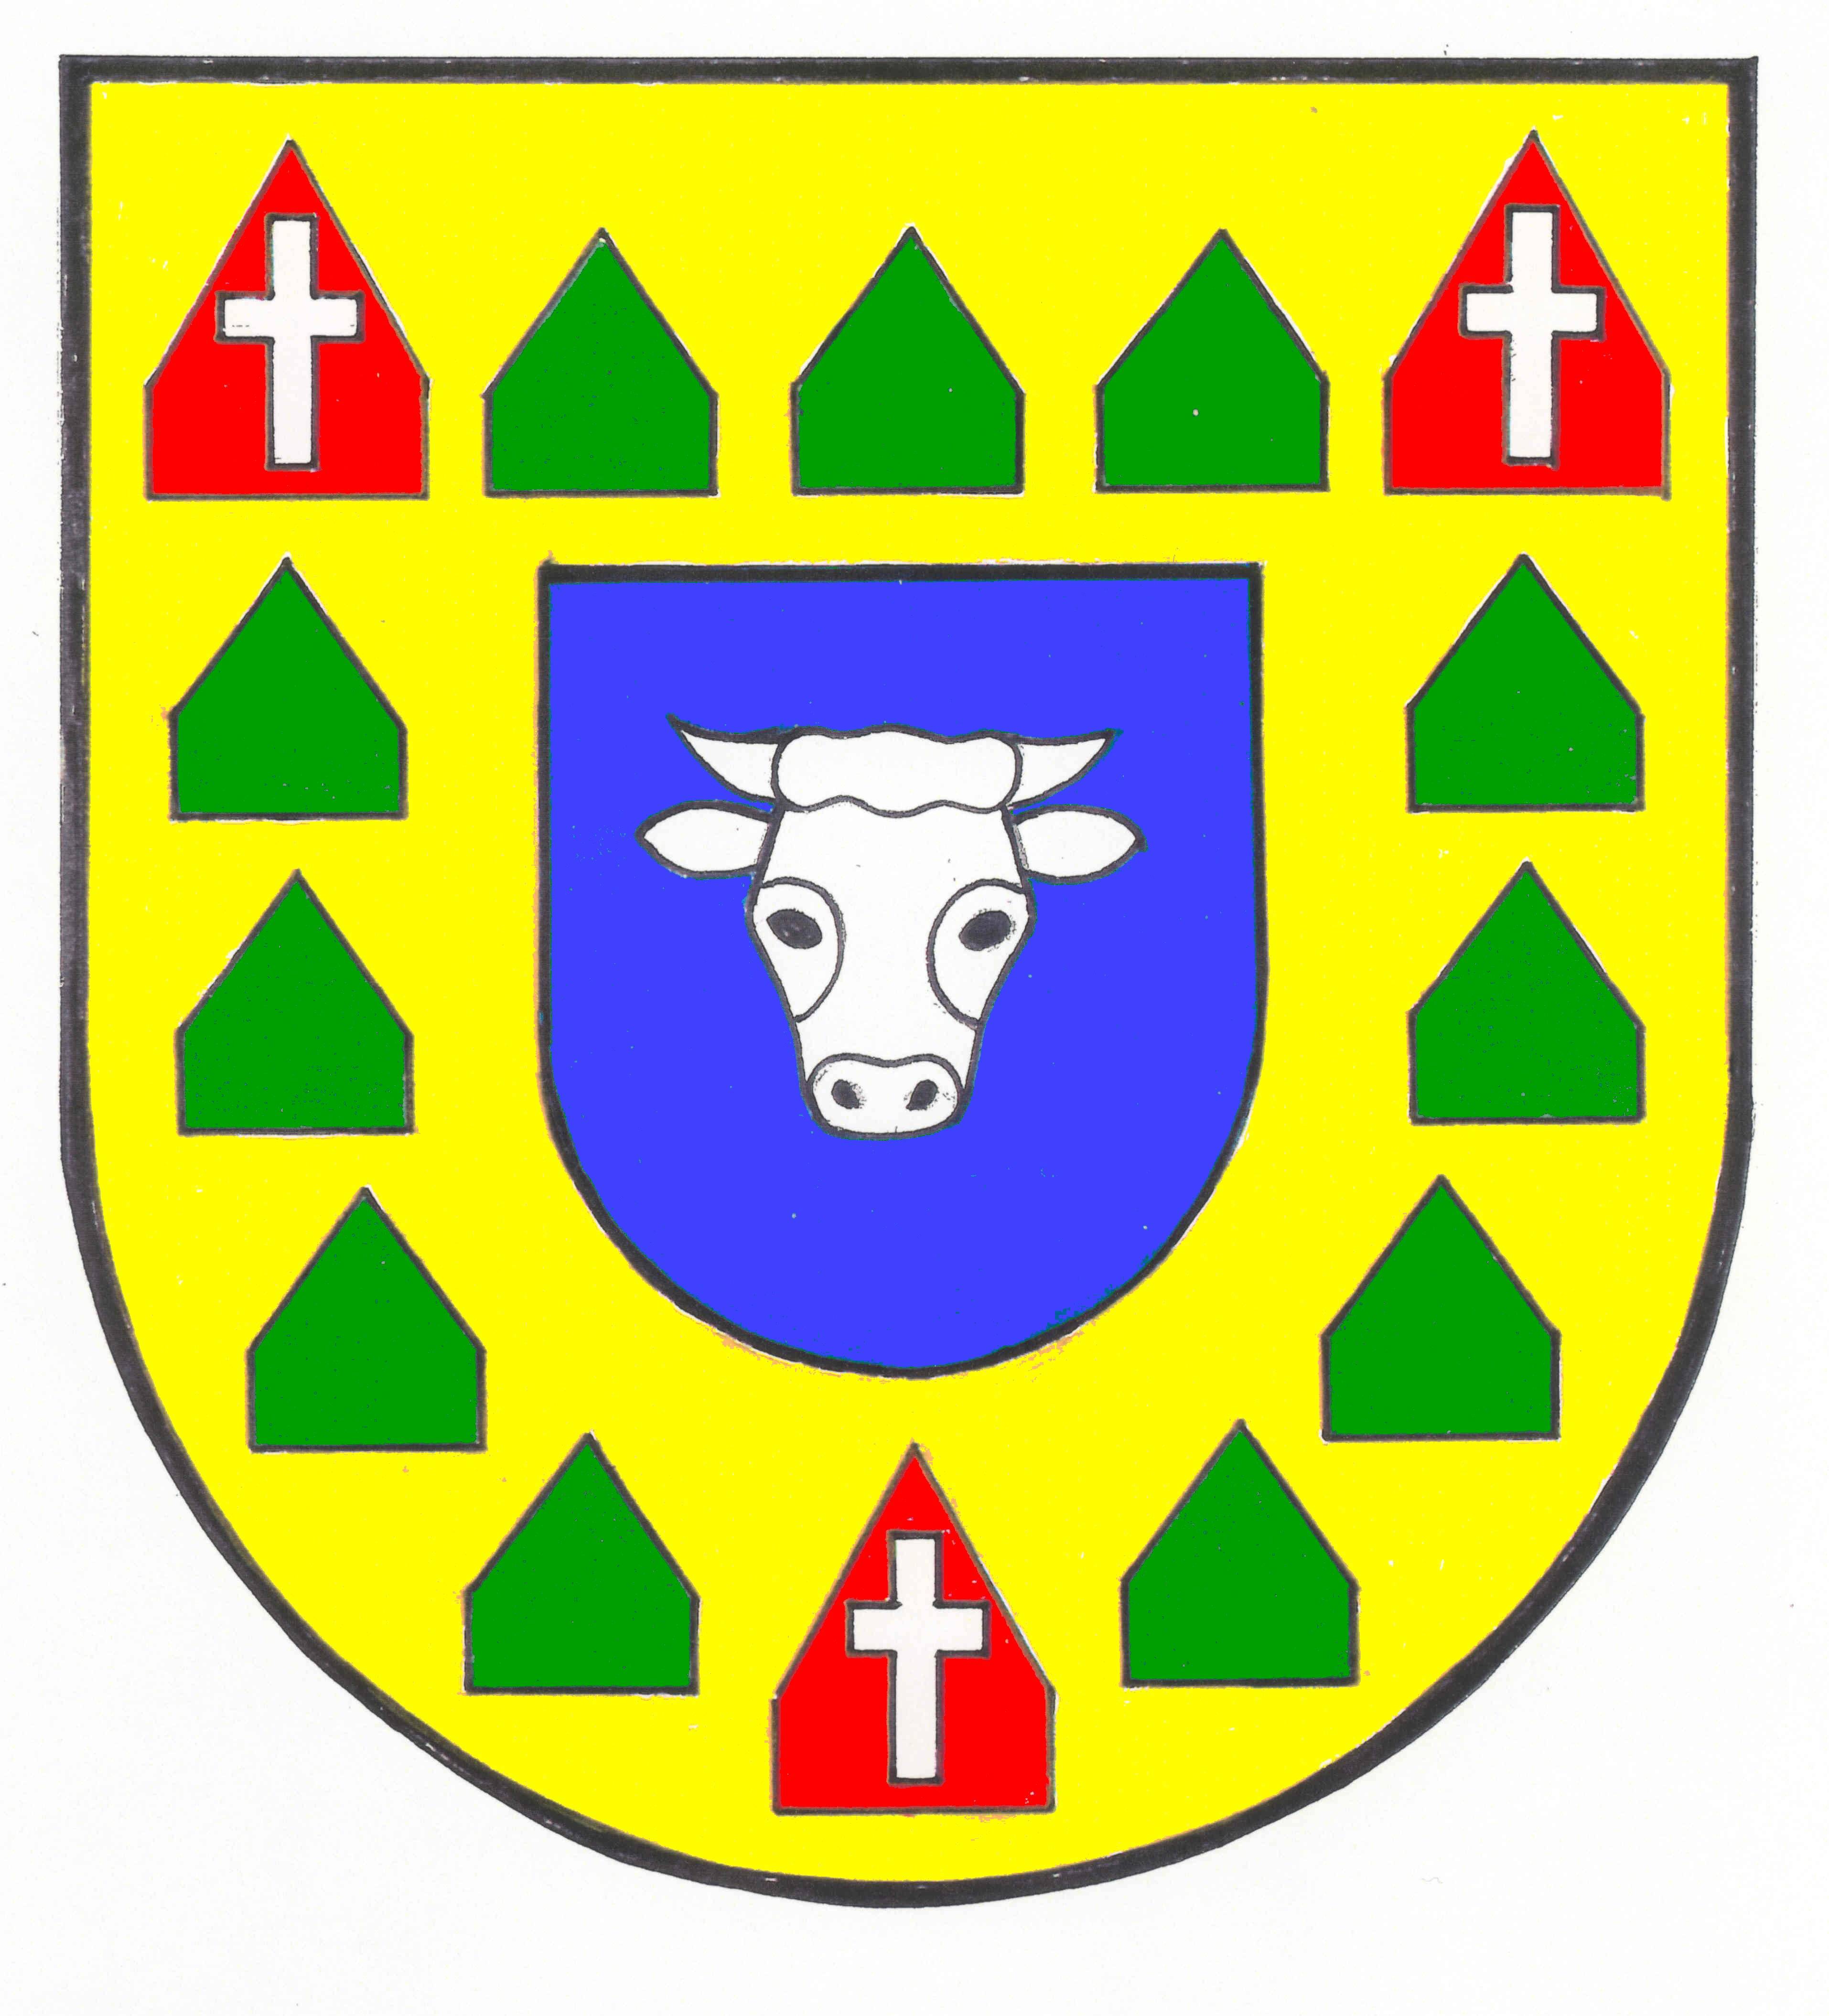 Wappen Amt Bredstedt-Land, Kreis Nordfriesland